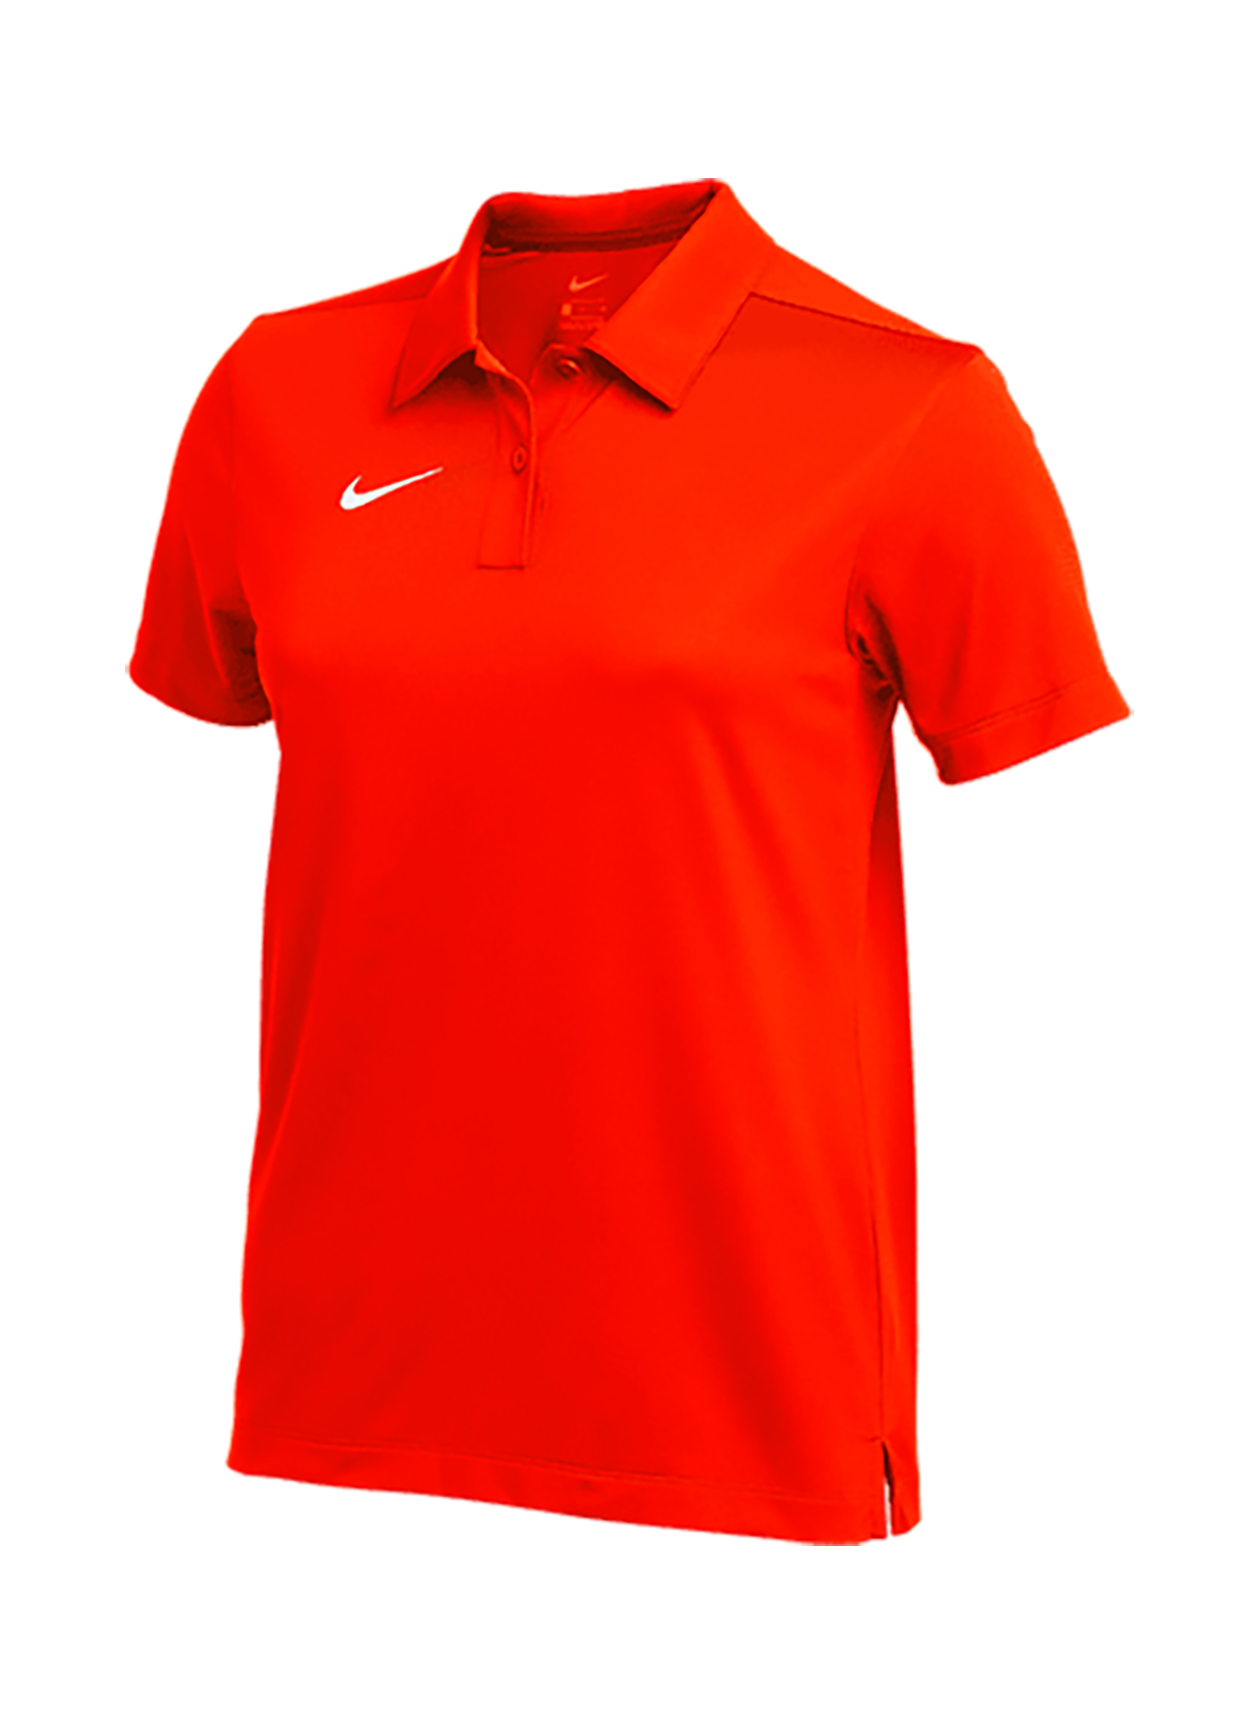 Mijlpaal Beschuldigingen helpen Women's Team Orange Nike Dri-FIT Franchise Polo | Nike